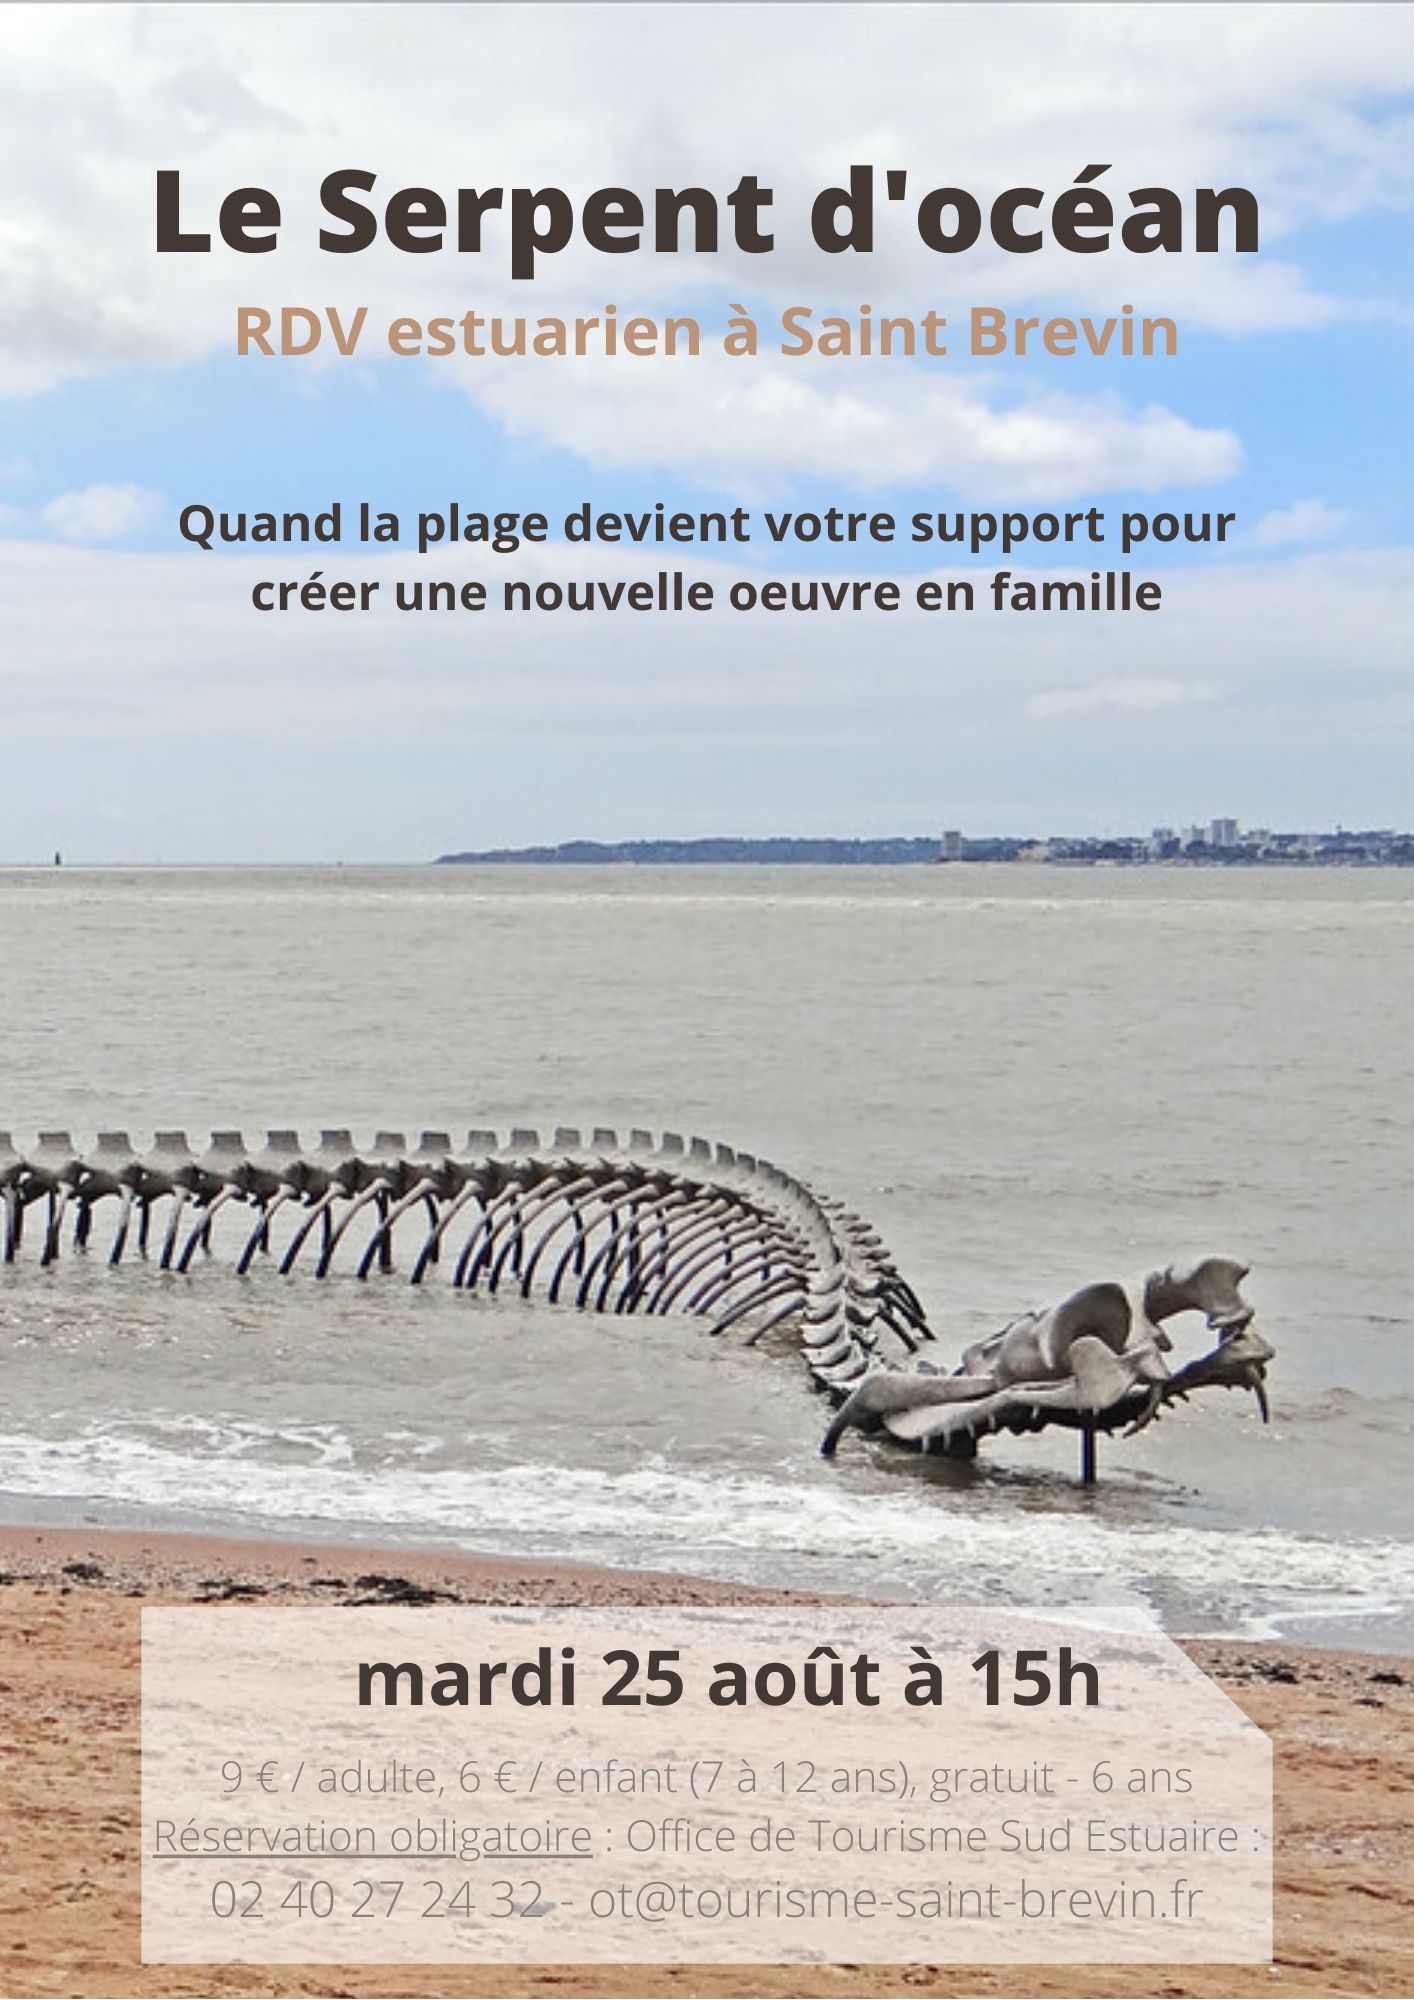 RDV estuariens août 2020 - Le Serpent d'océan - St Brevin